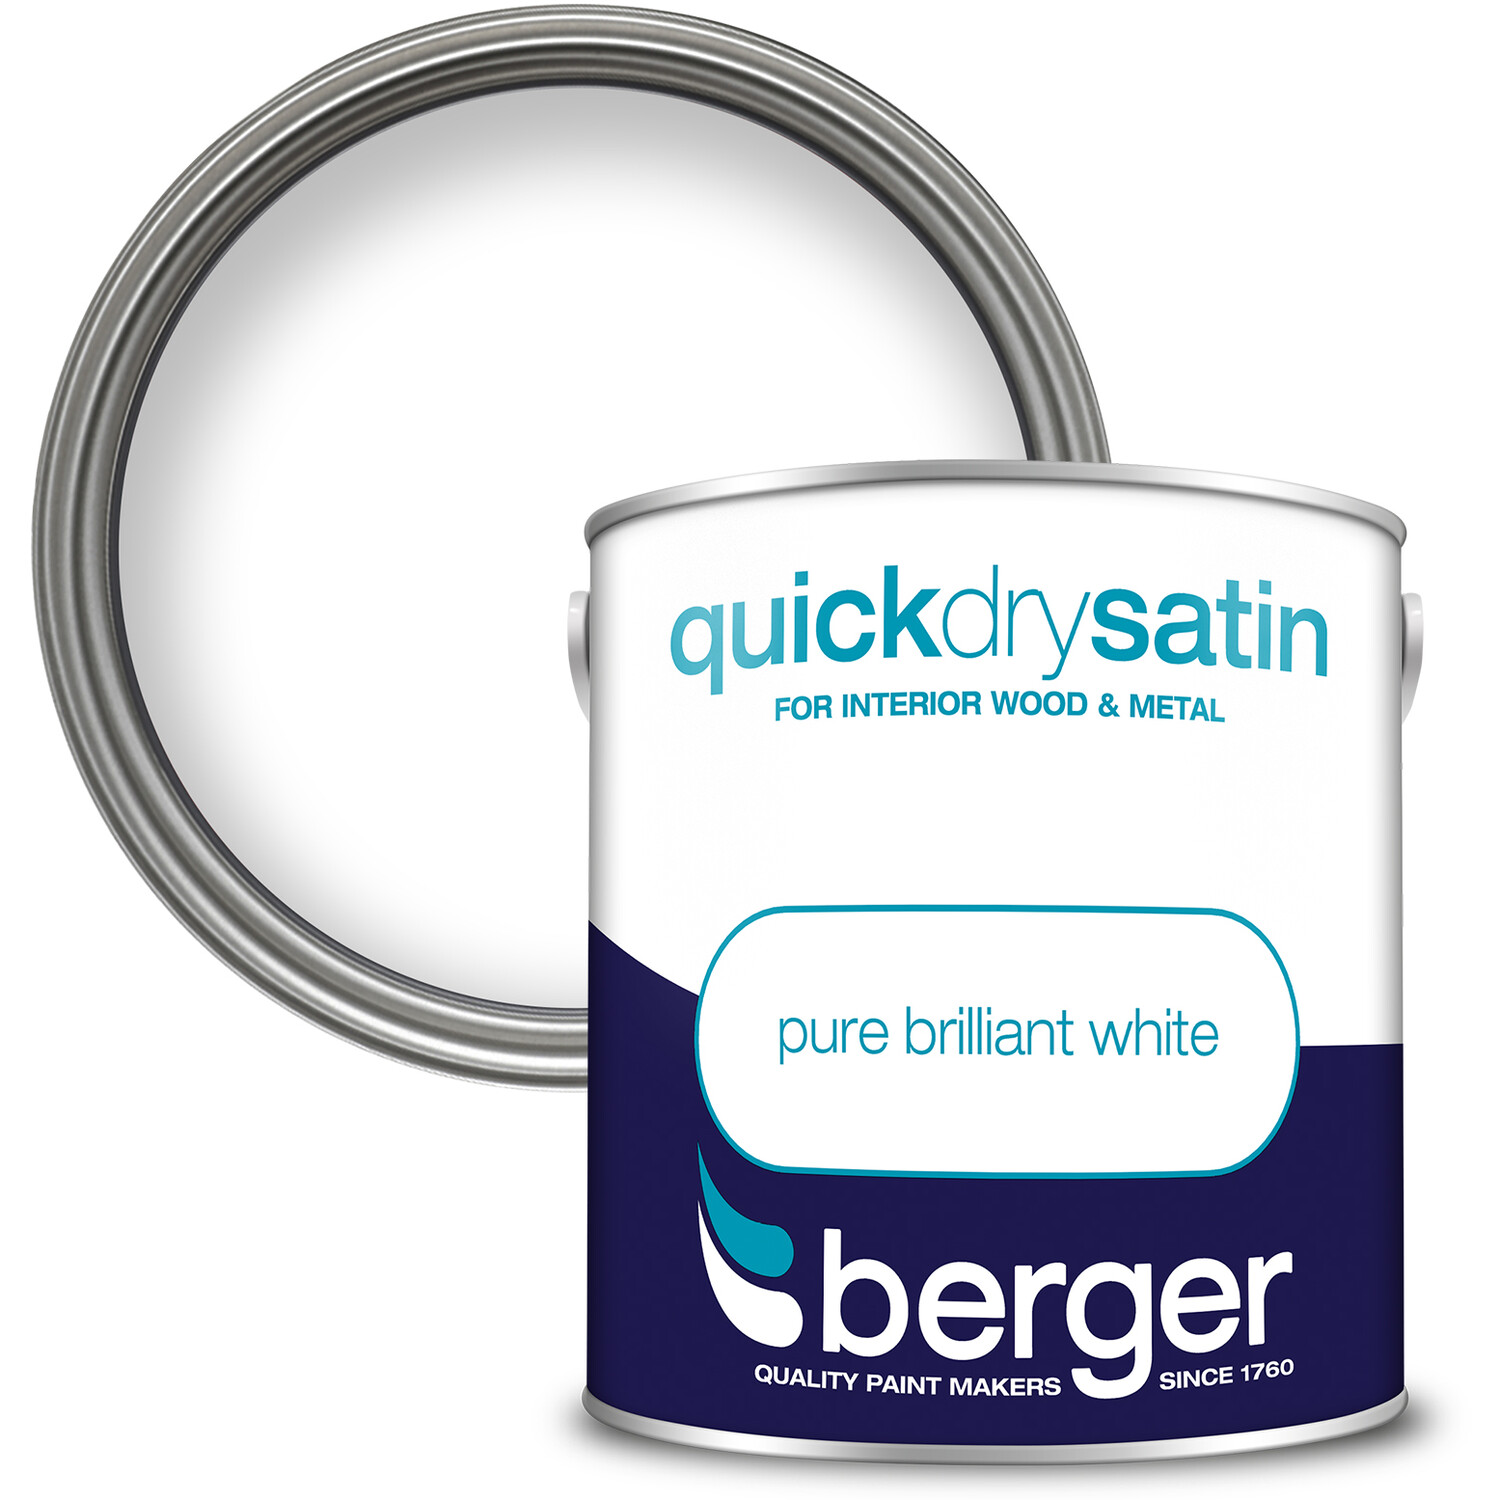 Berger Quick Dry Satin Pure Brilliant White 2.5L - Pure Brilliant White Image 1